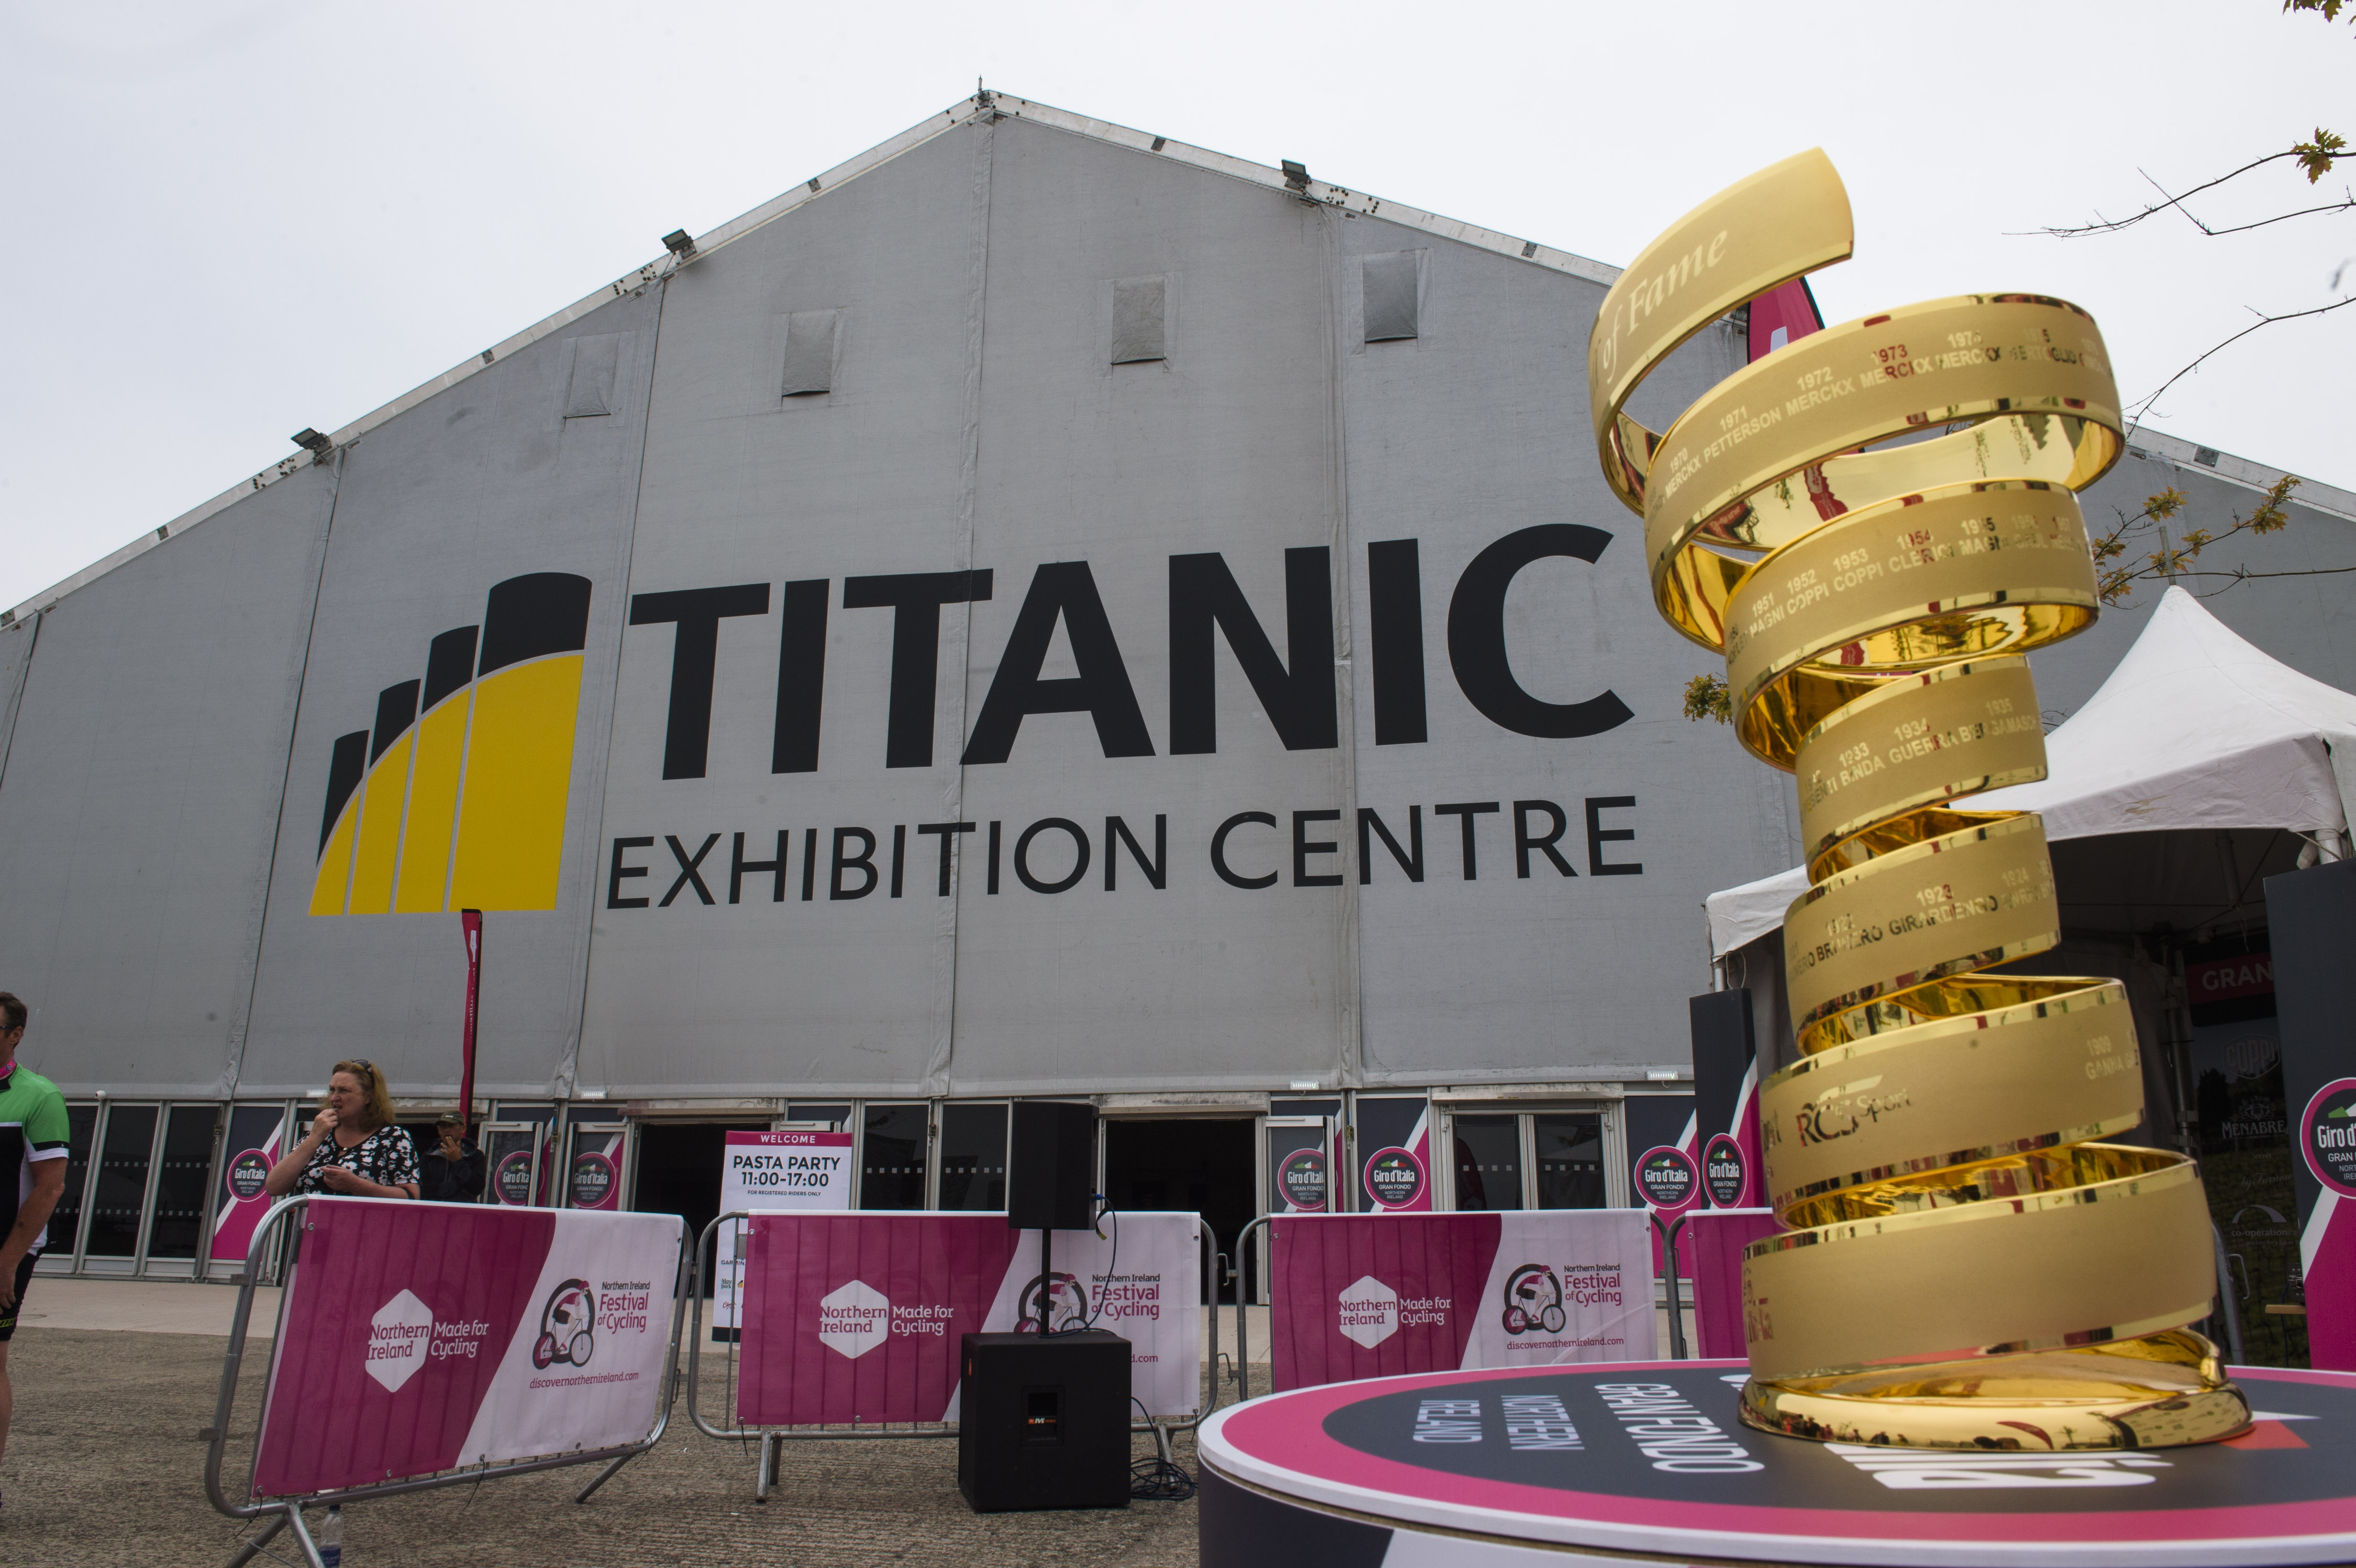 Gallery Titanic Exhibition Centre